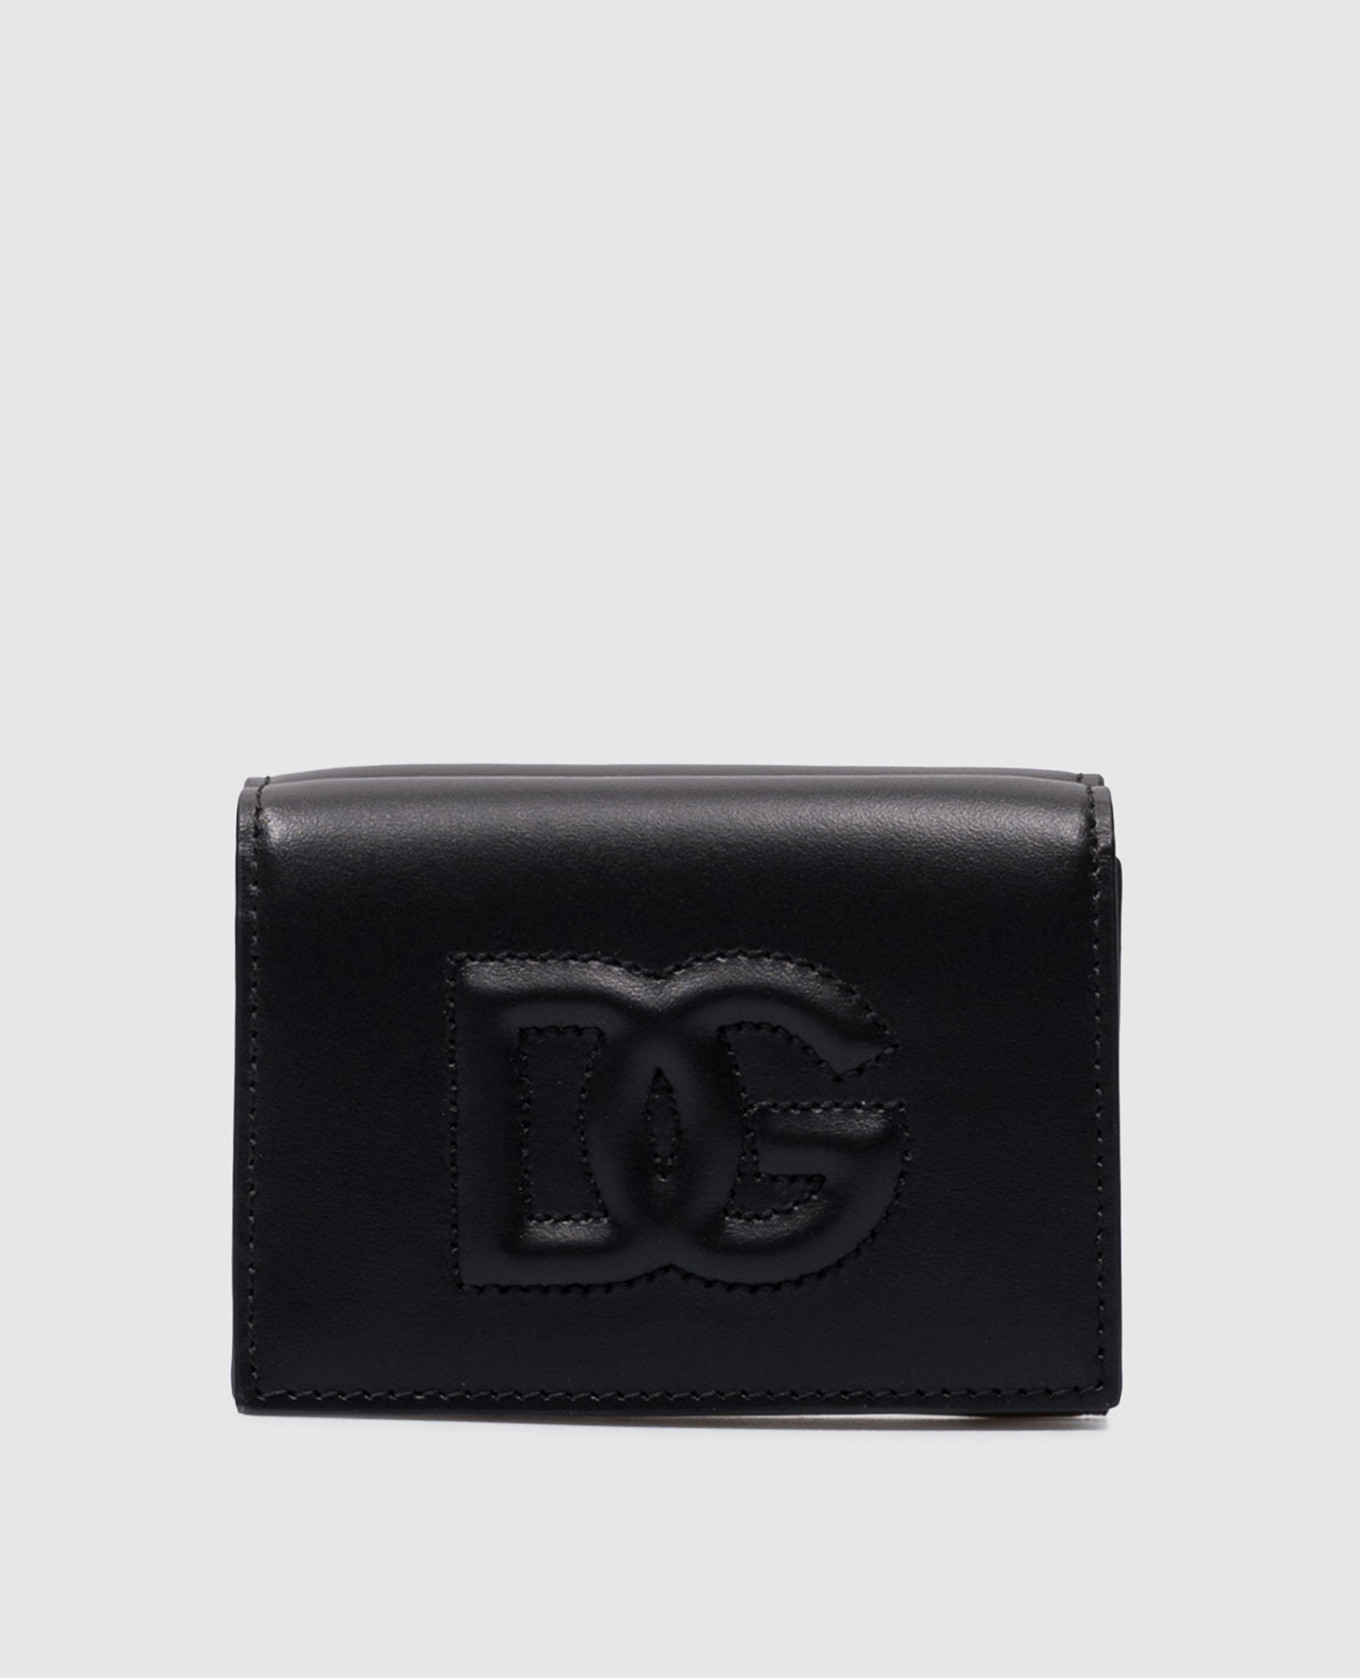 Черный кожаный портмоне DG LOGO